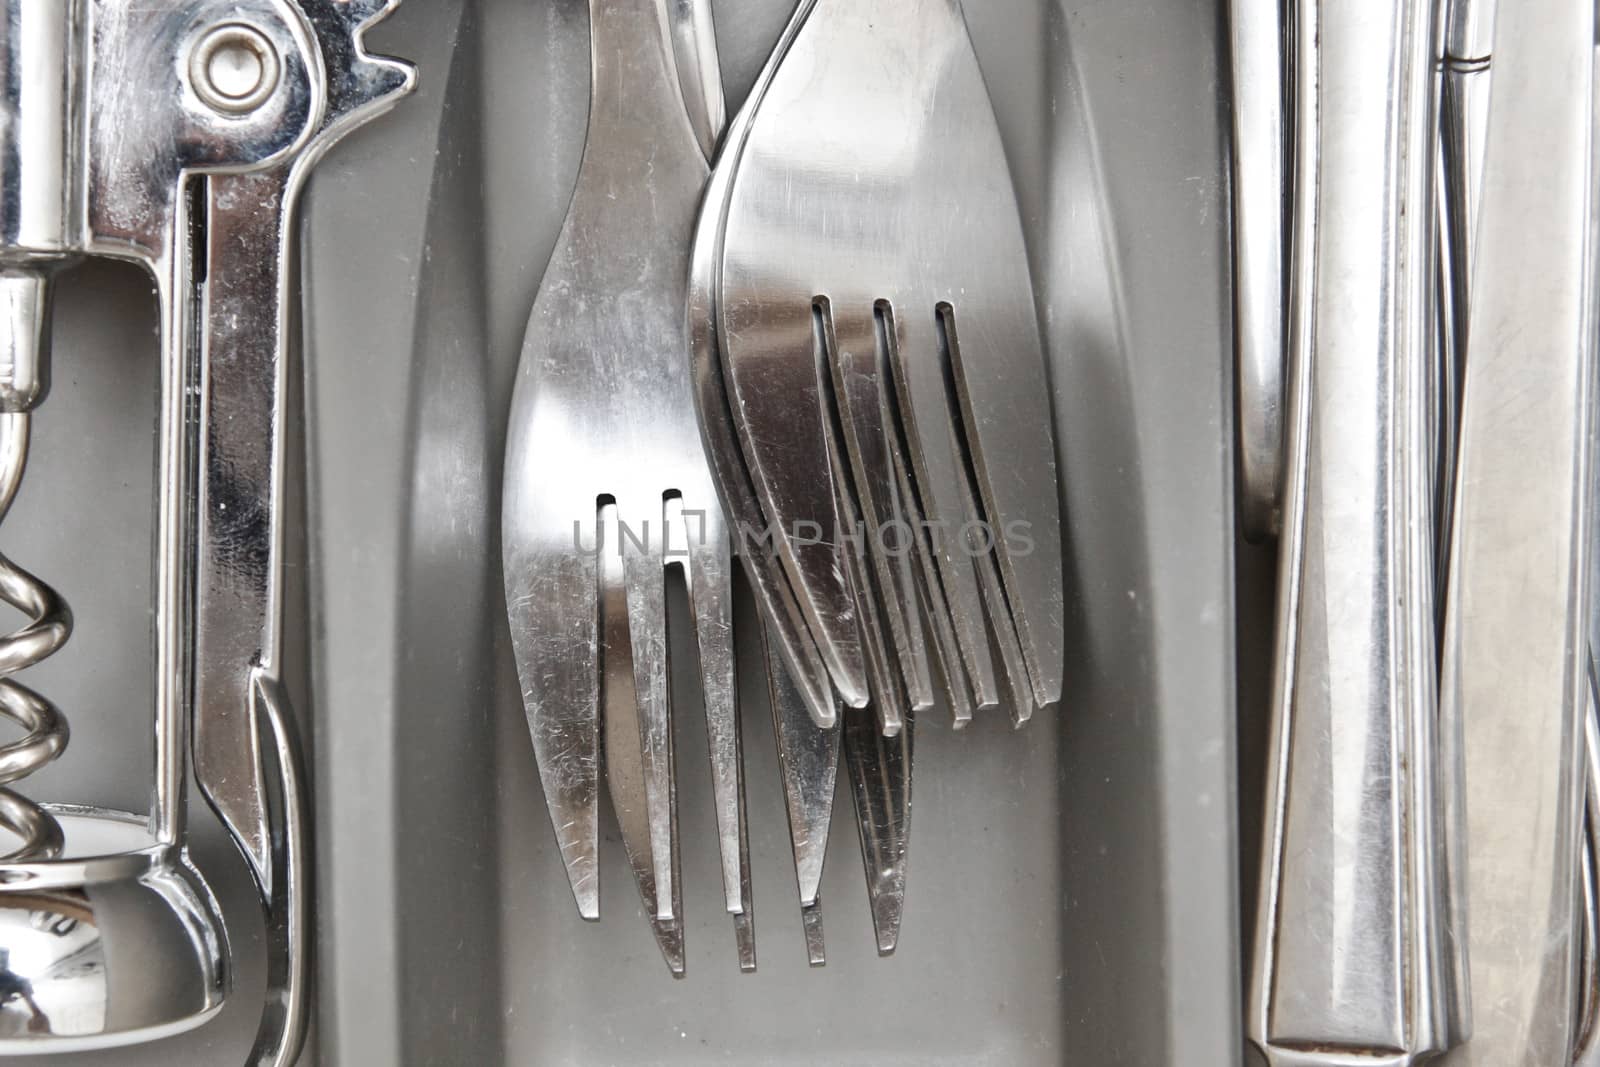 Forks by trgowanlock